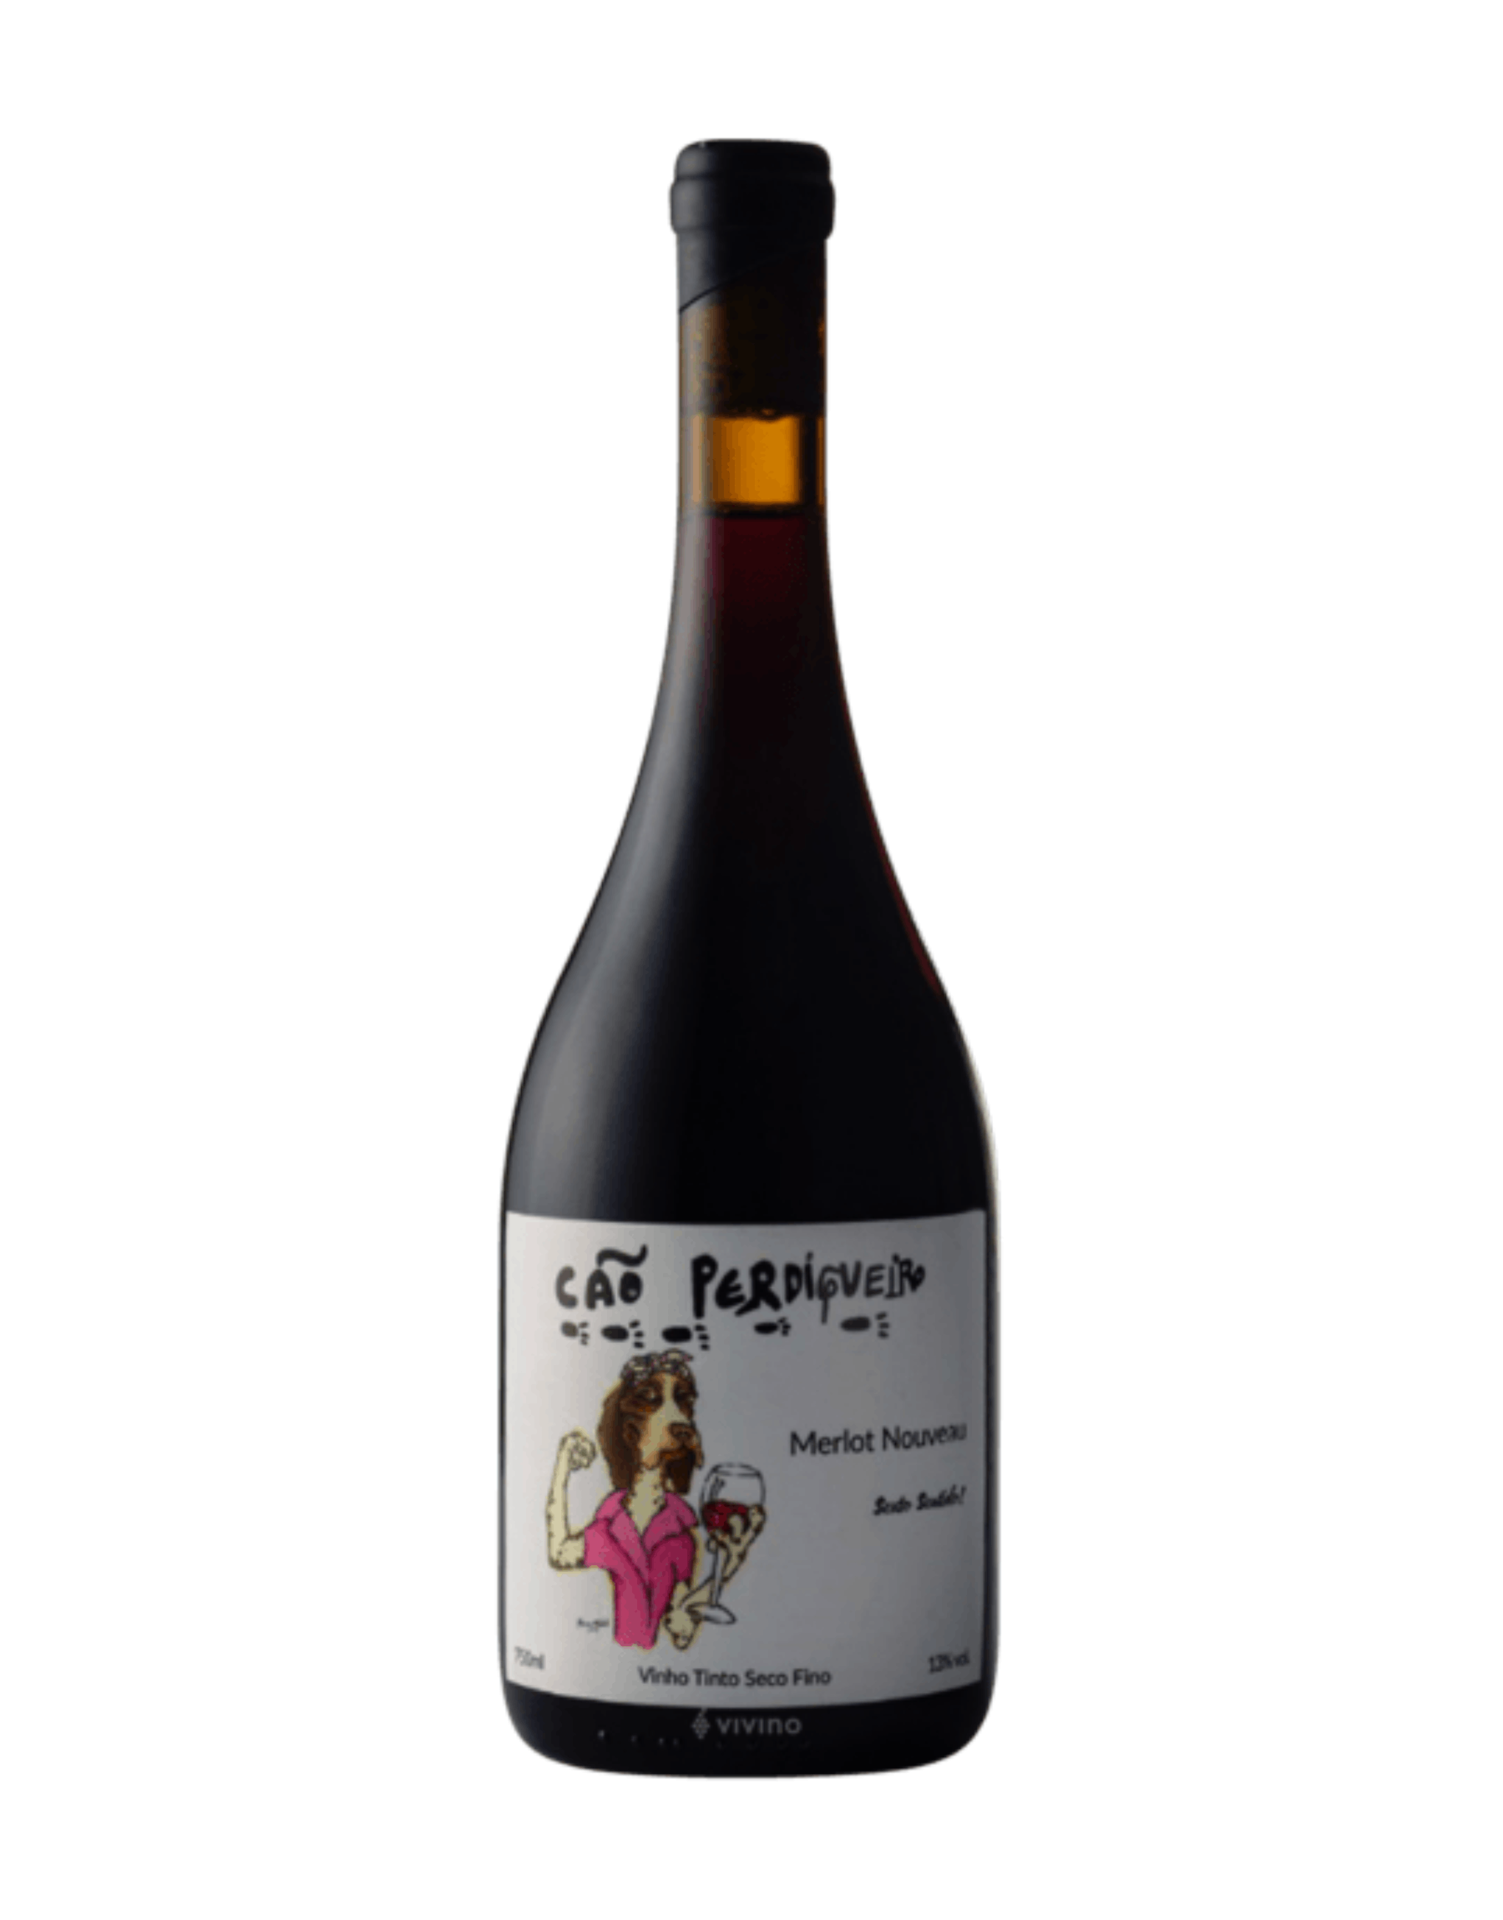 Vinho Cão Perdigueiro - Tinto Seco - Merlot Nouveau - 750 ml